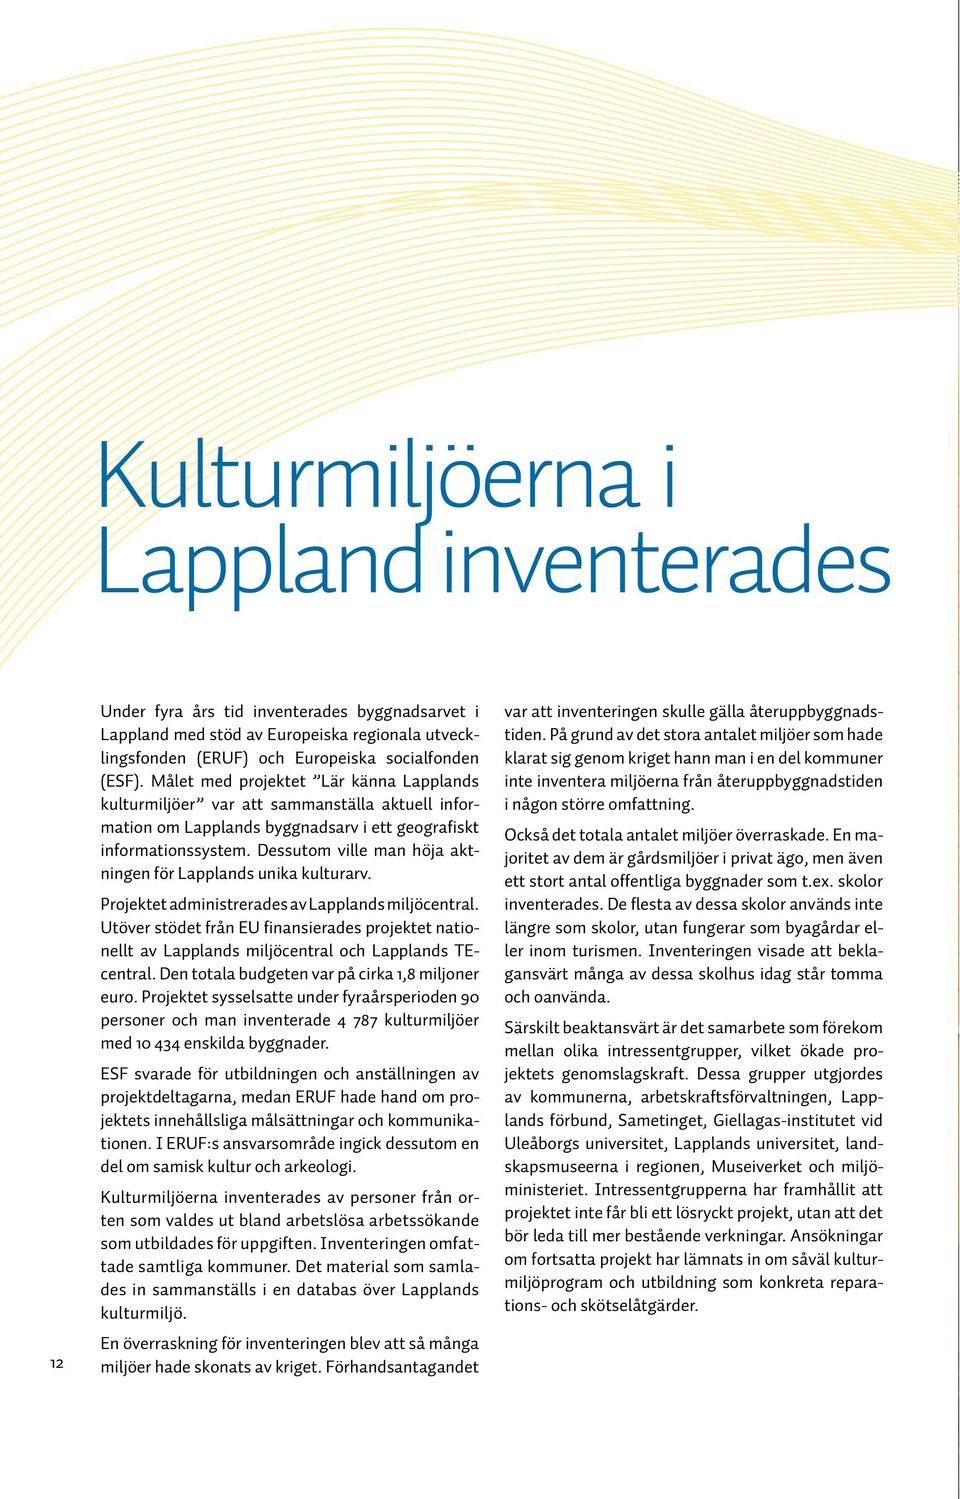 Dessutom ville man höja aktningen för Lapplands unika kulturarv. Projektet administrerades av Lapplands miljöcentral.